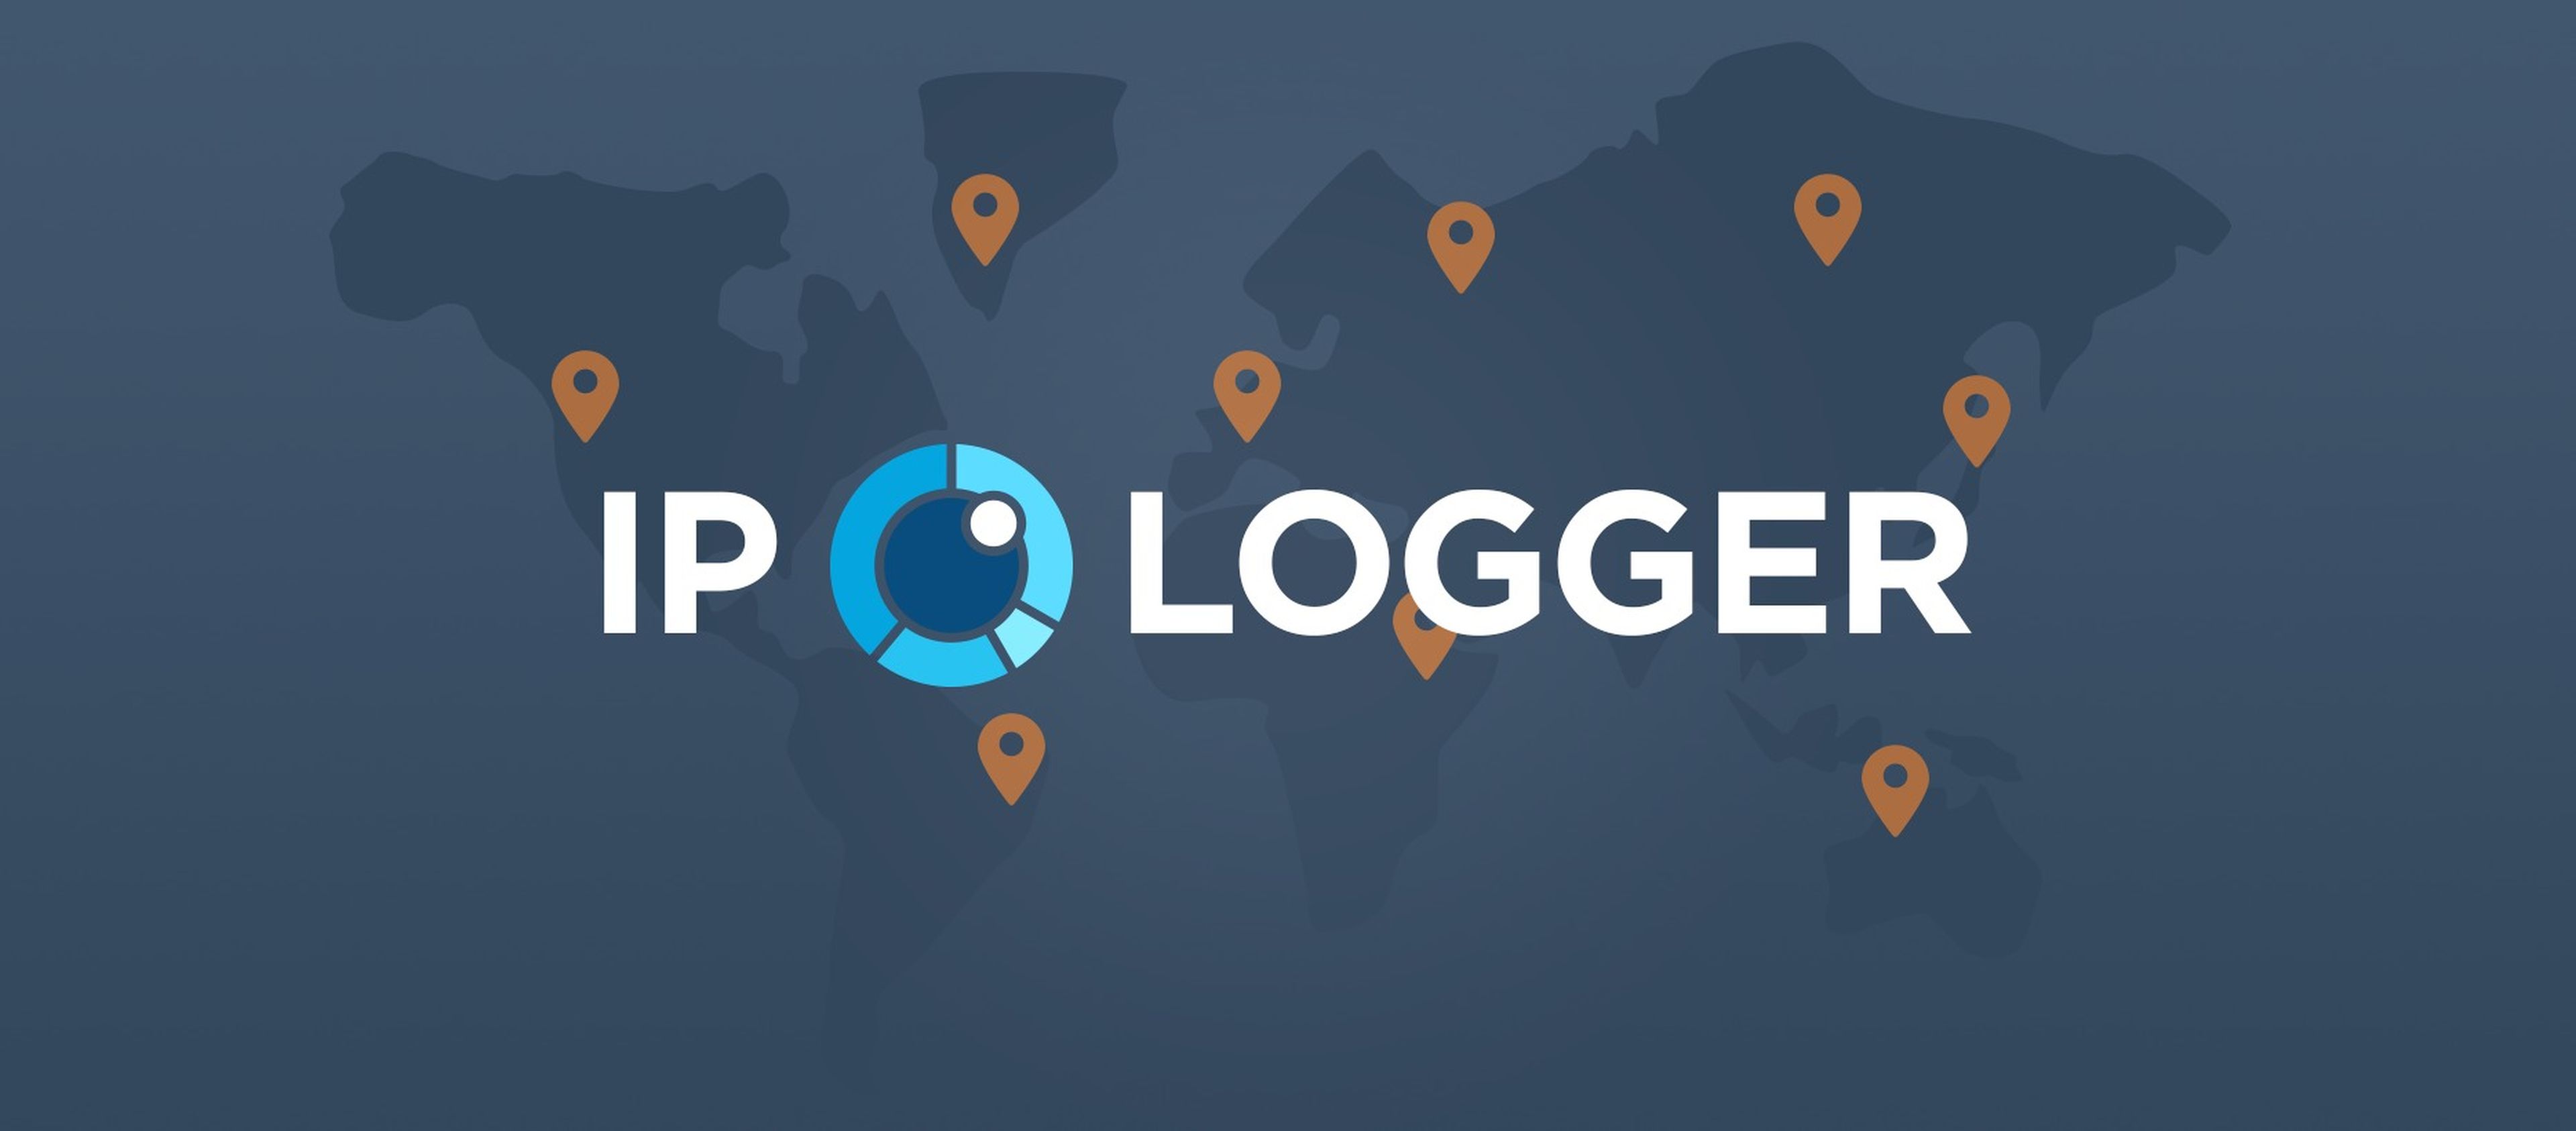 IP Logger, la herramienta que registra tu ubicación